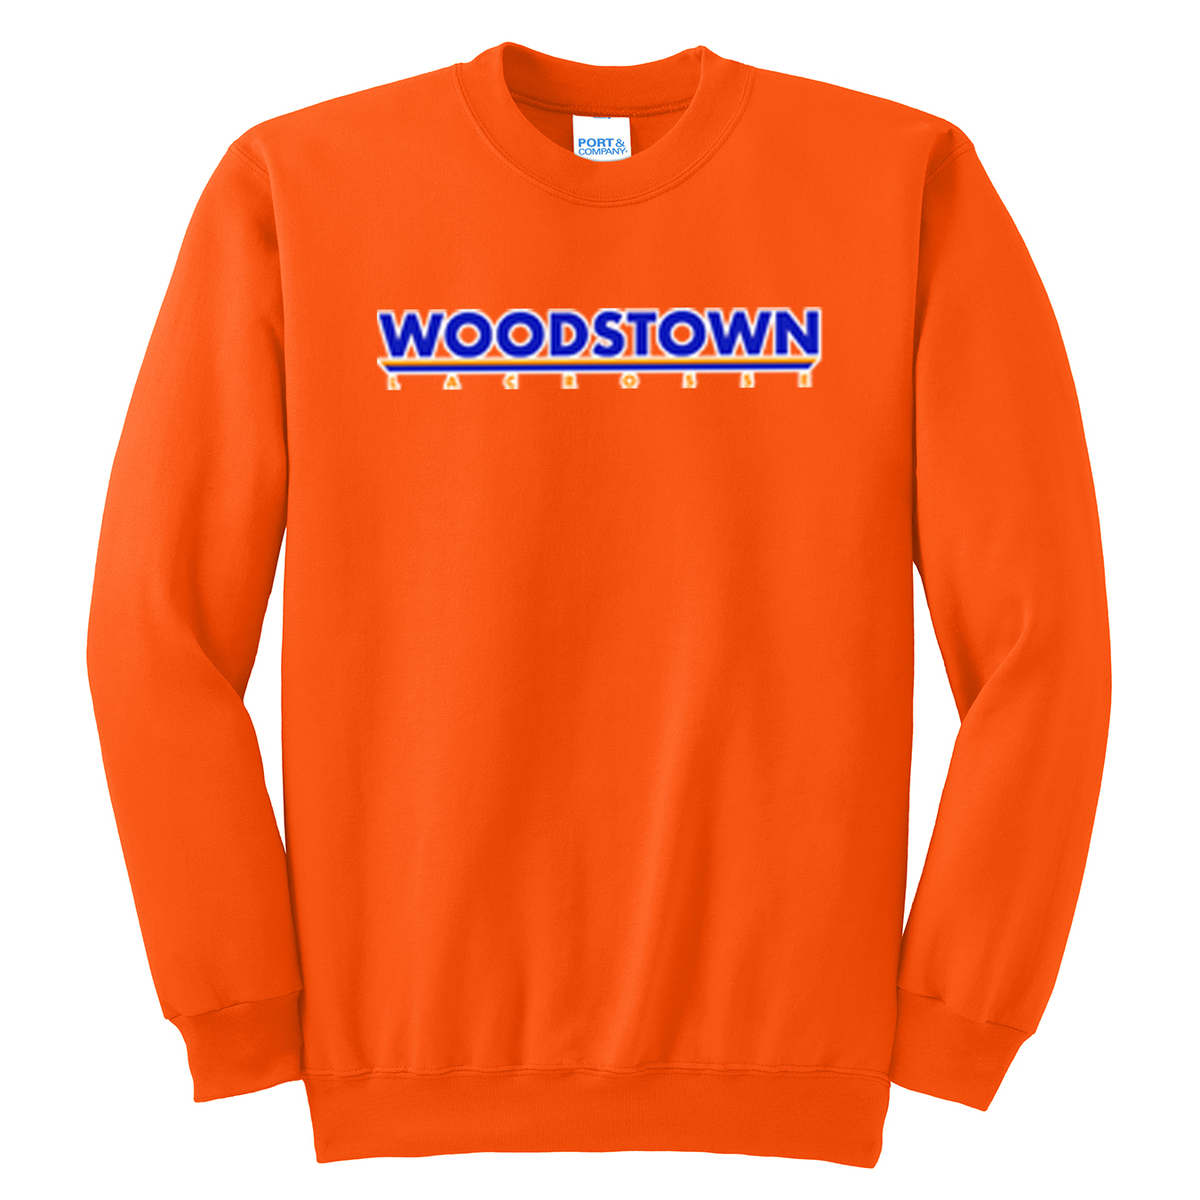 Woodstown HS Boys Lacrosse Crew Neck Sweater